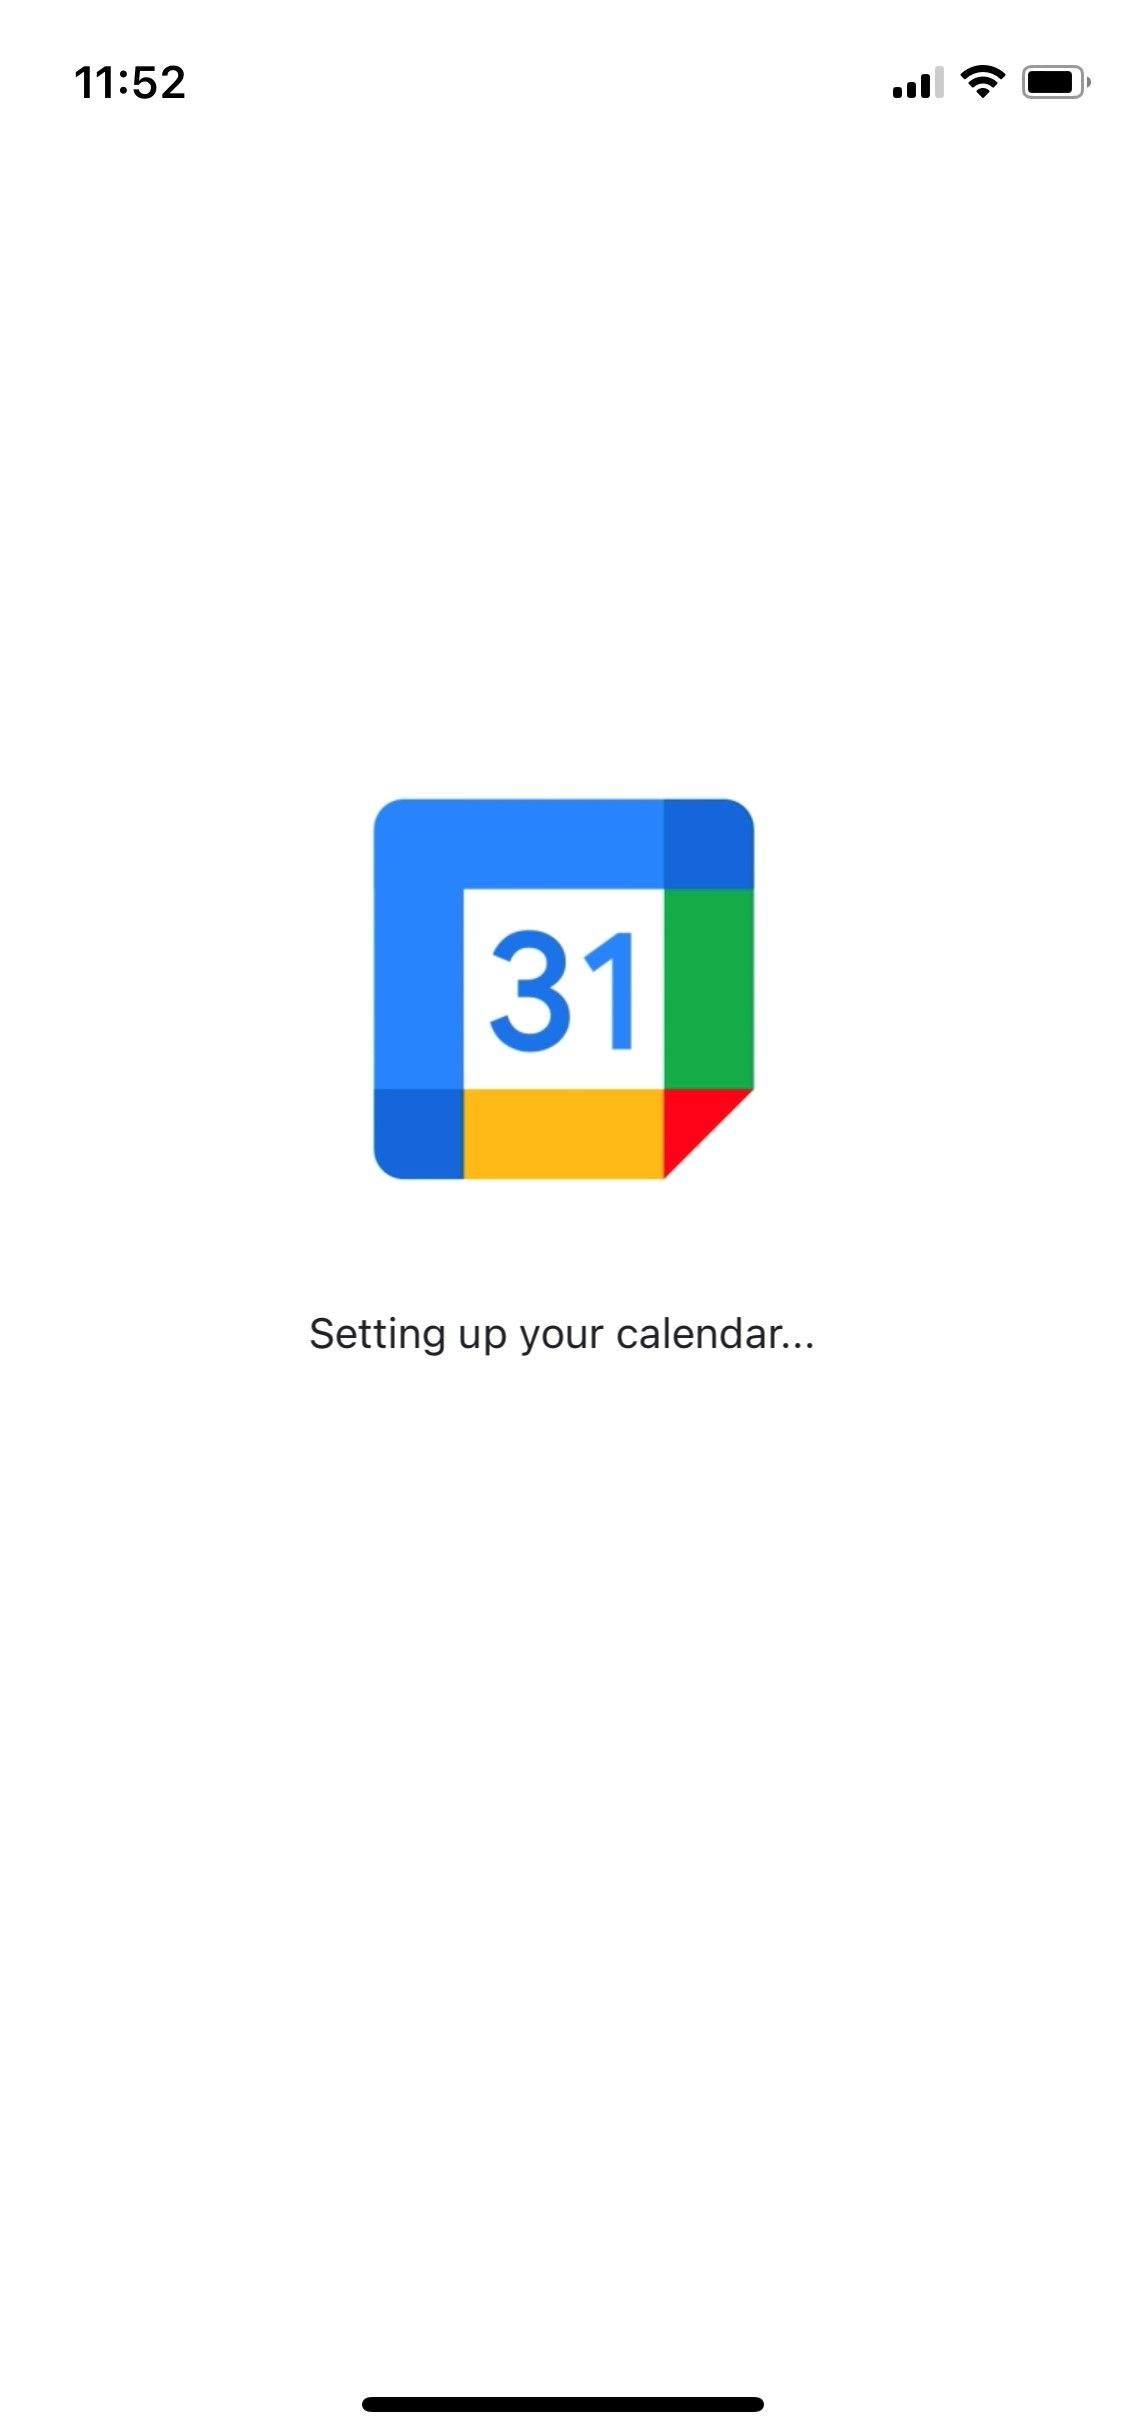 Screenshot of Google Calendar Set Up screen